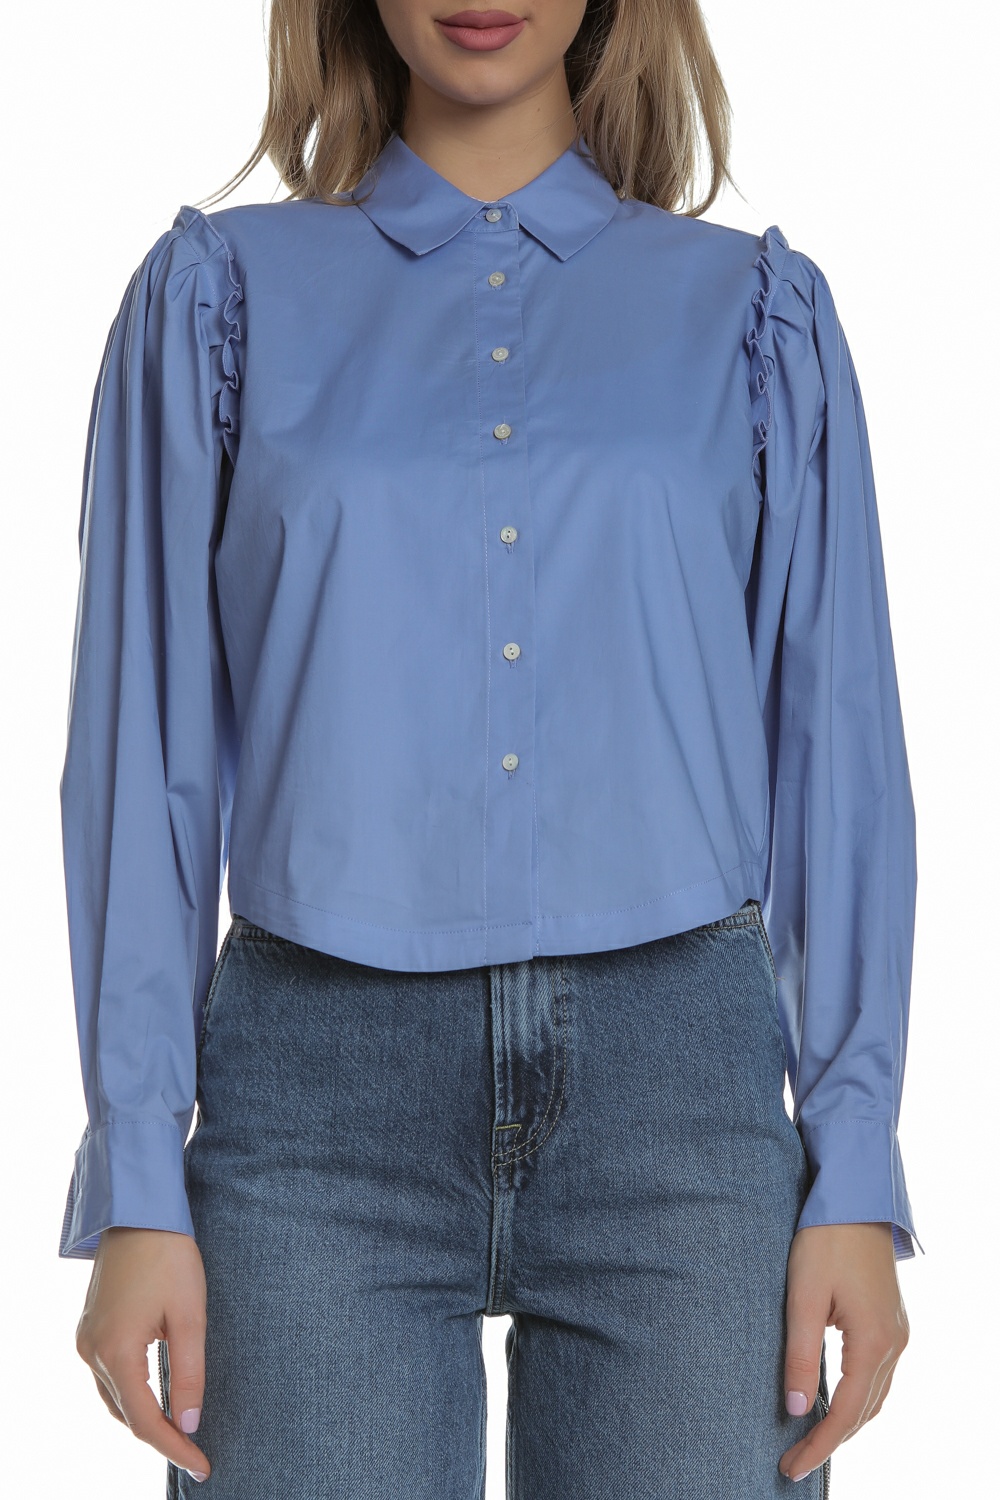 Γυναικεία/Ρούχα/Πουκάμισα/Μακρυμάνικα SCOTCH & SODA - Γυναικείο πουκάμισο cropped SCOTCH & SODA γαλάζιο